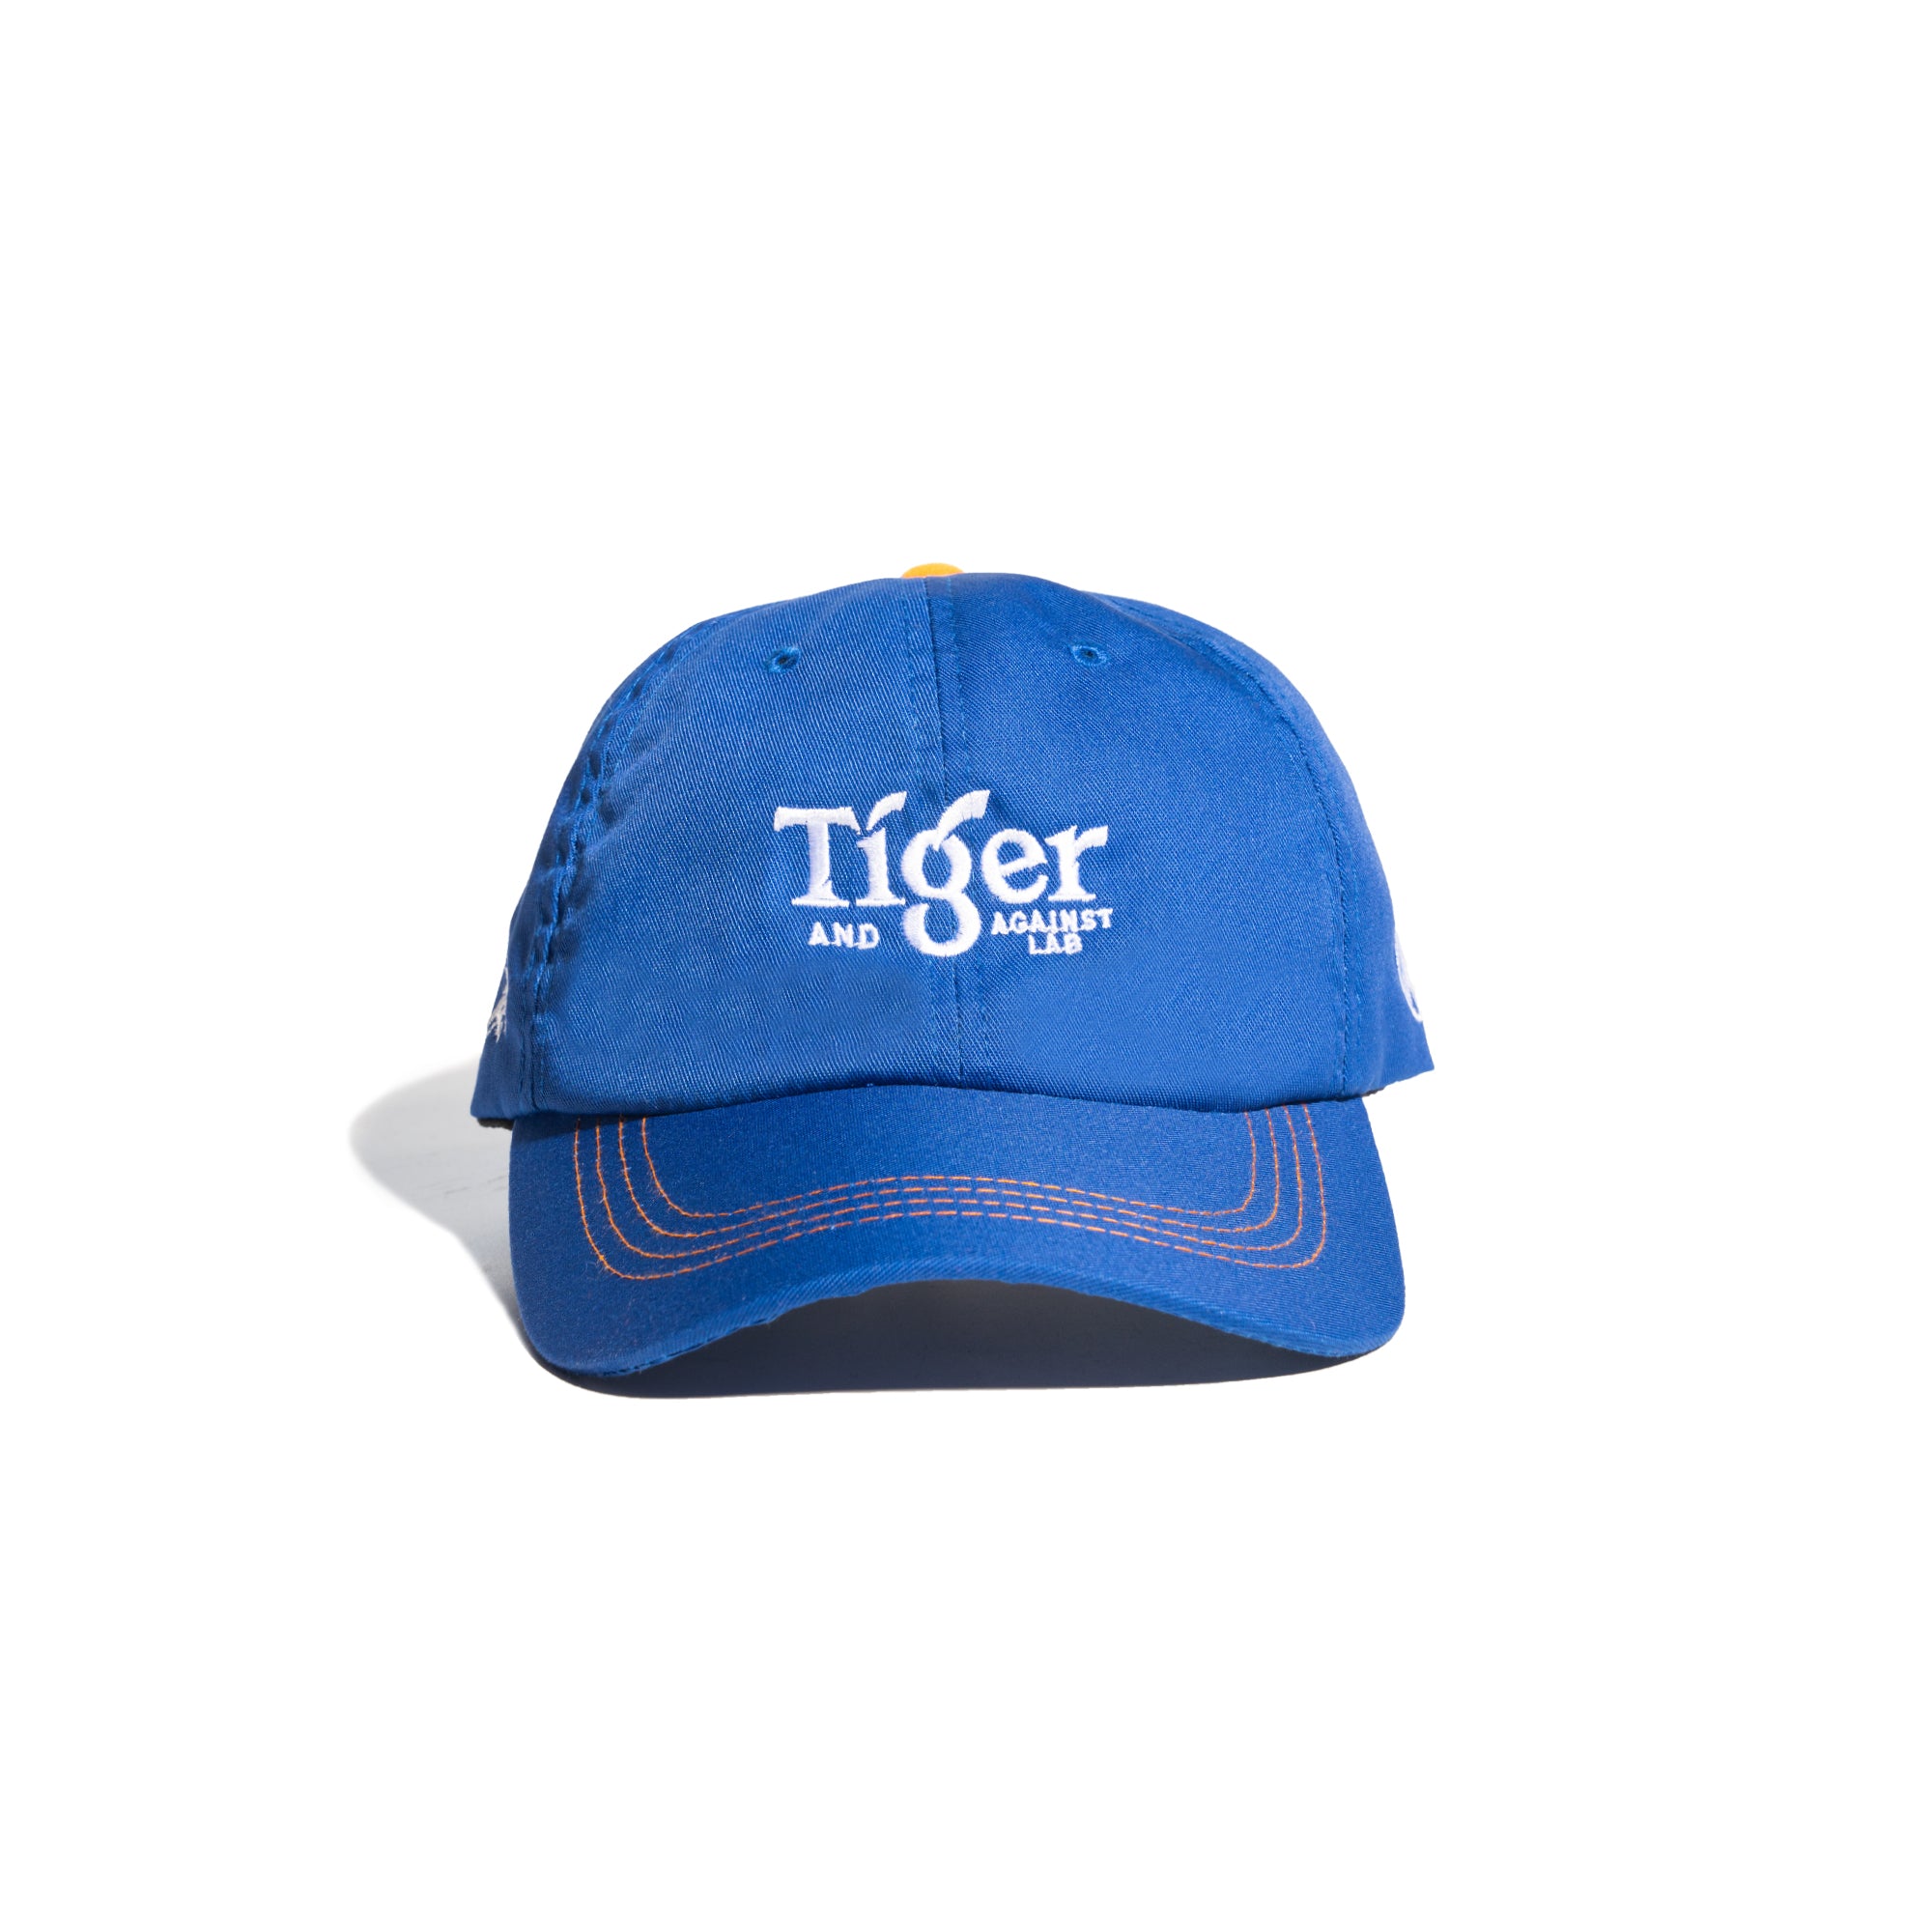 TIGER X AGAINST LAB. BOLDER TOMORROW CAP